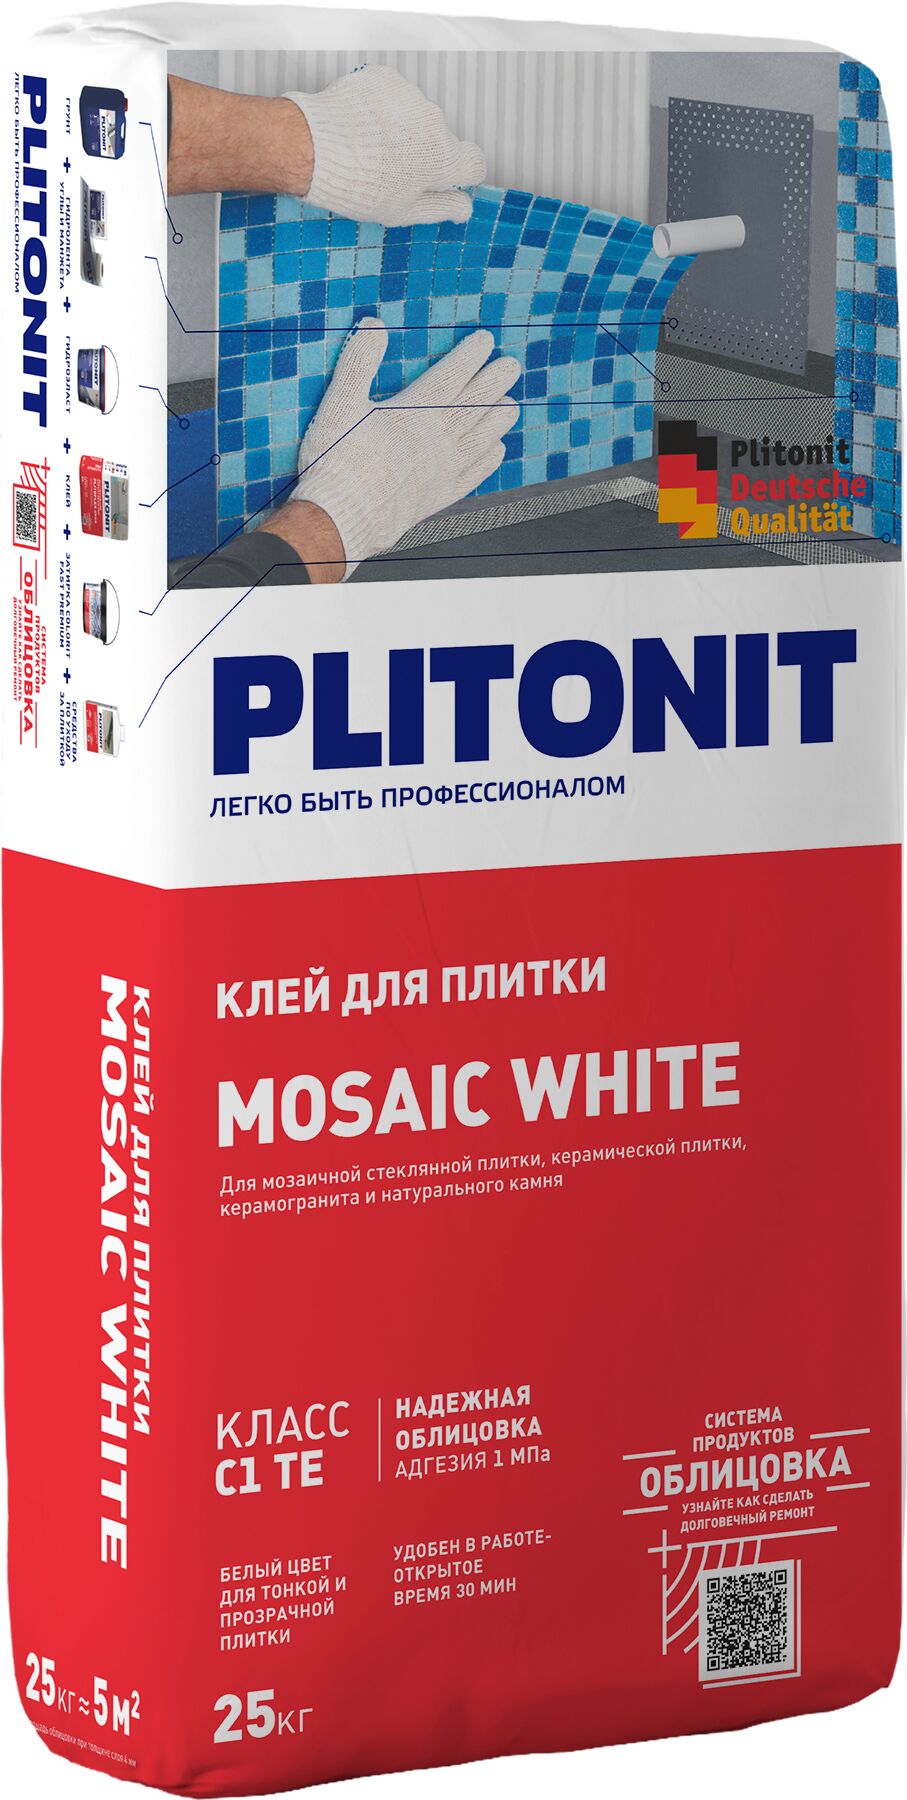 PLITONIT MOSAIC WHITE -25 белый клей для для для стеклянной мозаики, керамической плитки, керамогранита и натурального камня, класс С1 ТЕ 